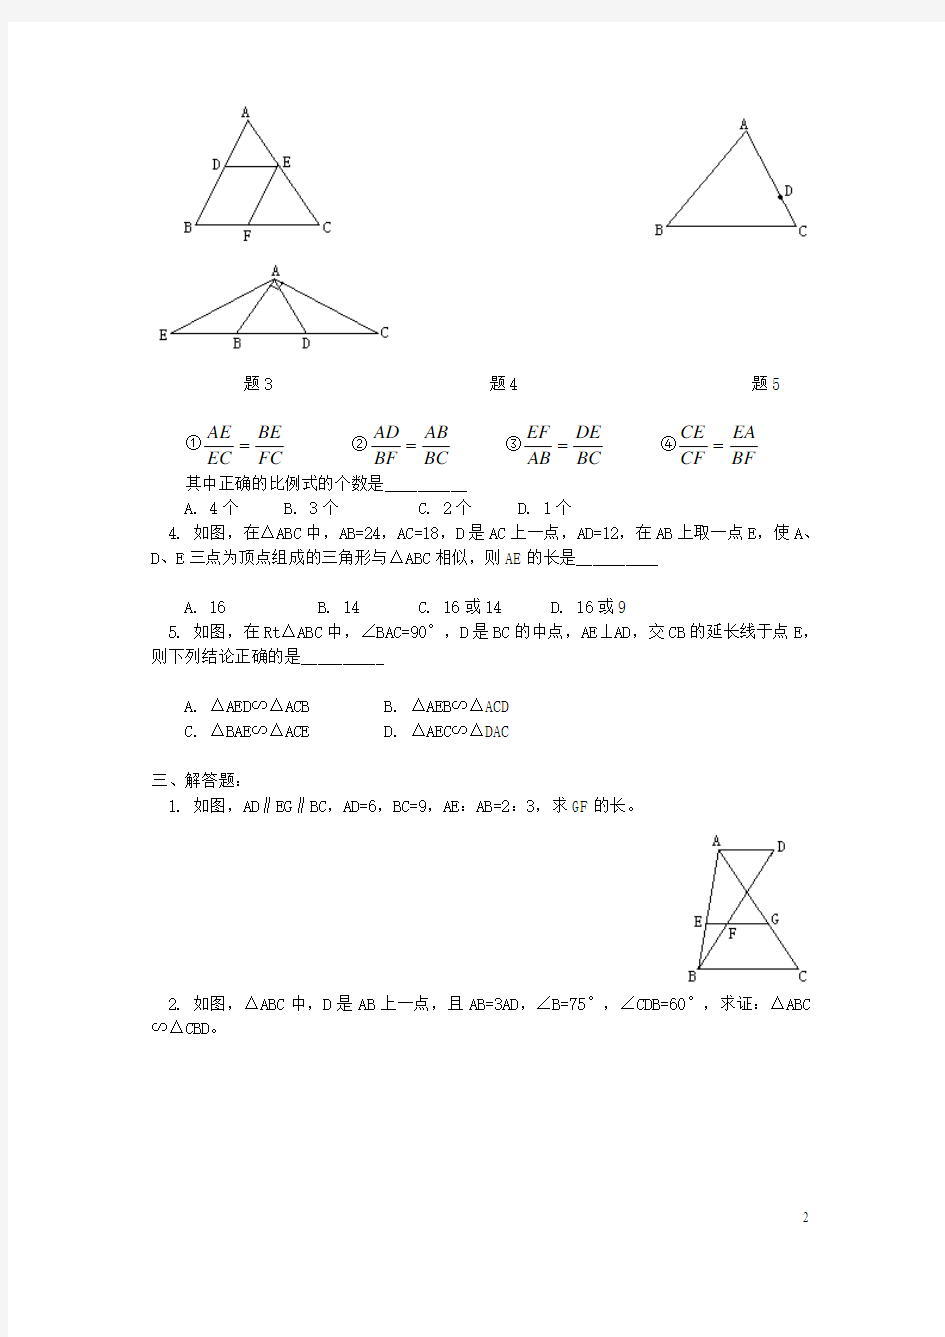 相似三角形经典练习题(4套)附带答案